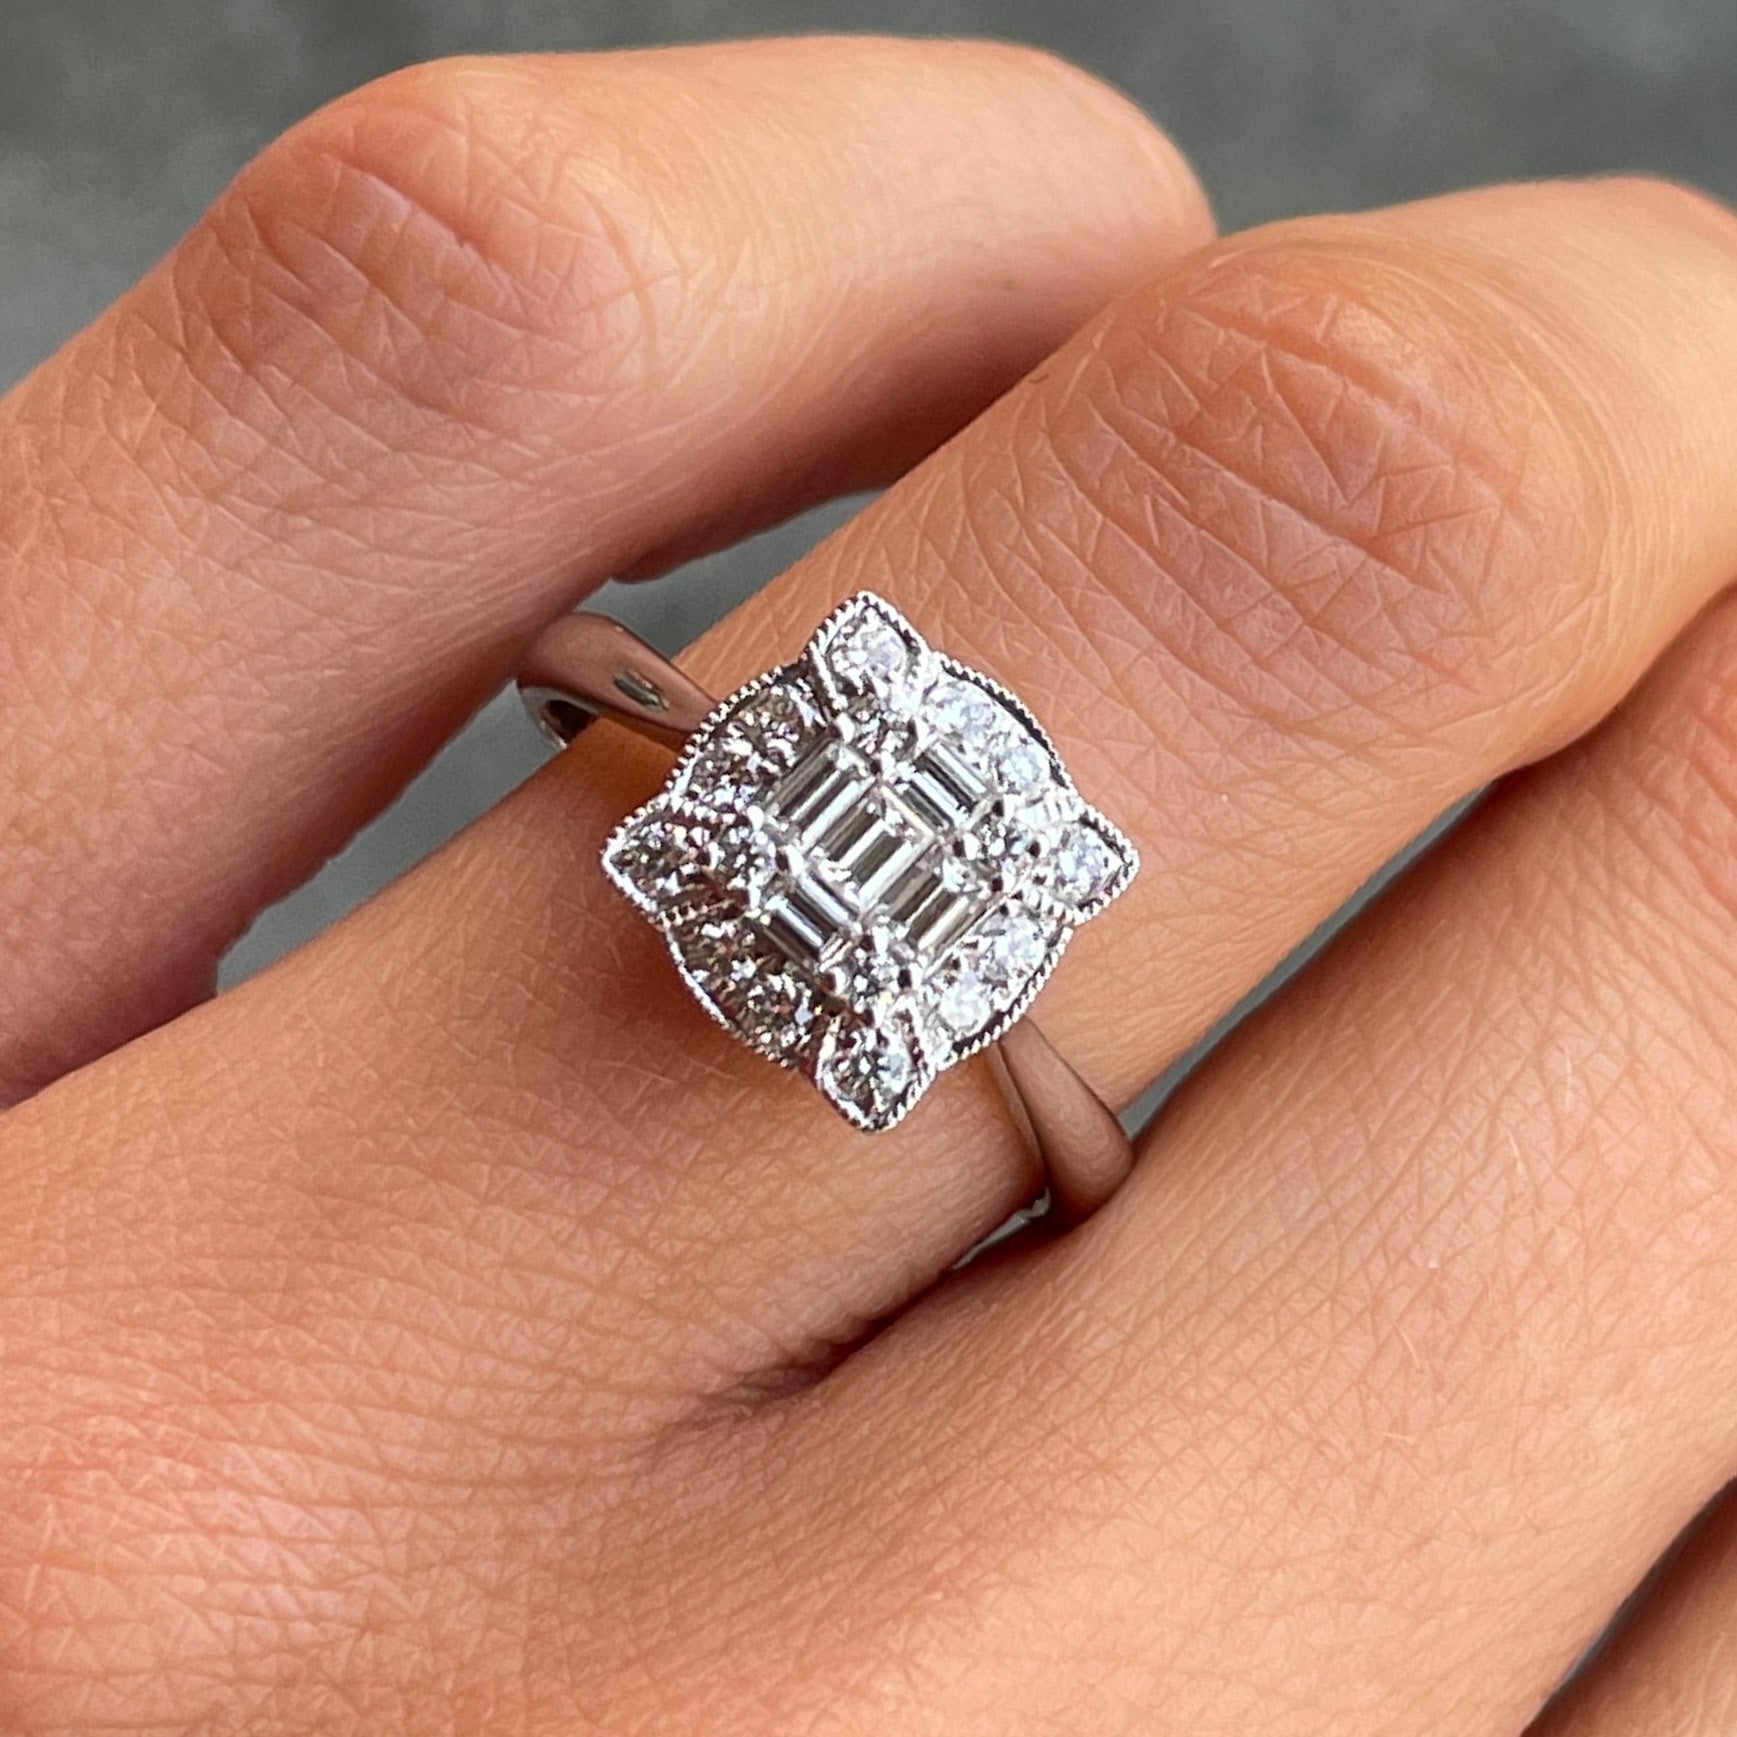 Details of Her Custom Diamond Engagement Ring - YouTube